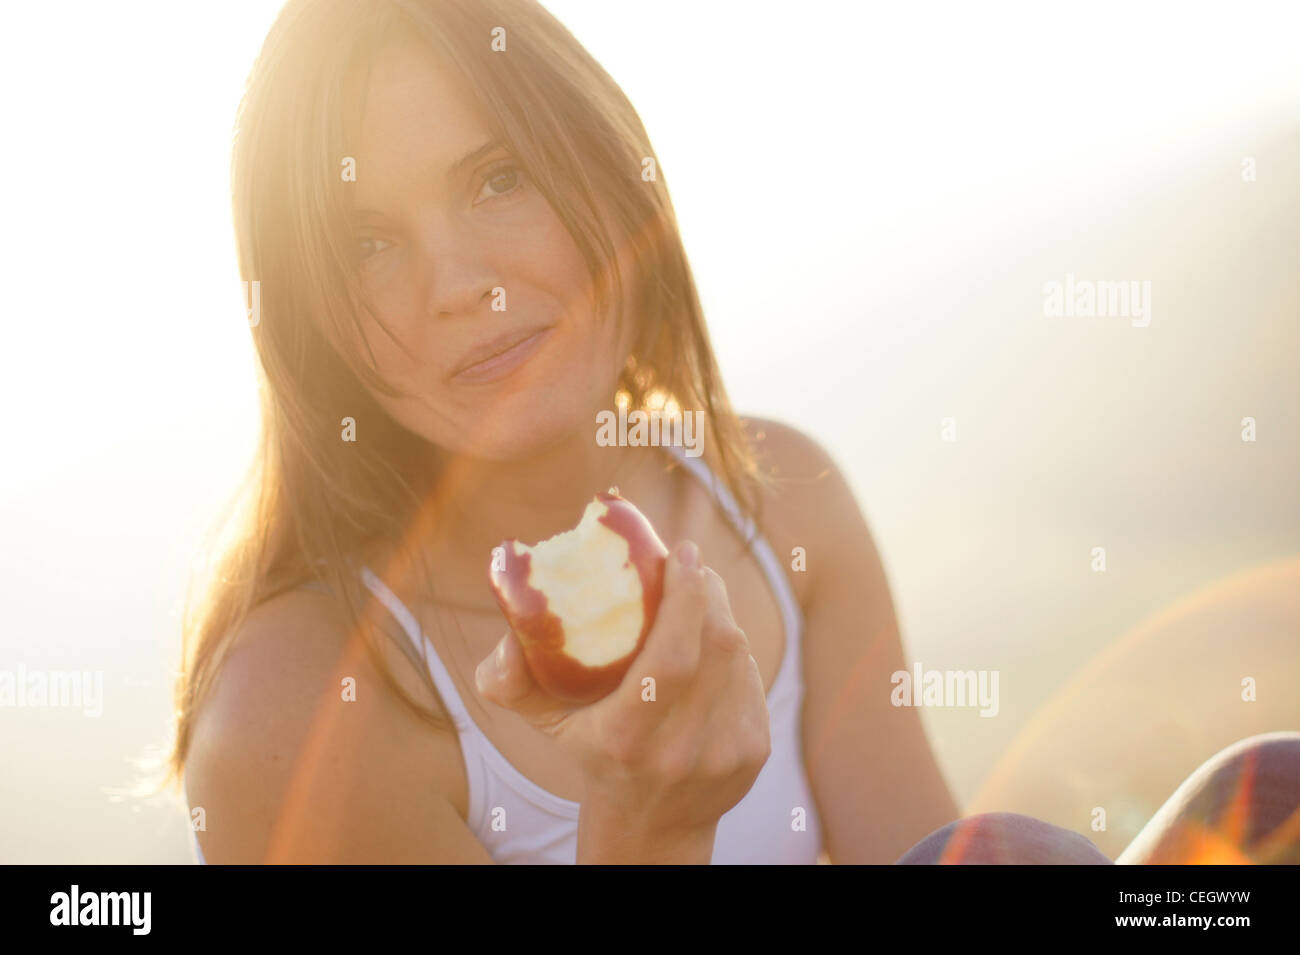 Schöne junge Frau, die einen saftigen roten Apfel zu essen, im schönen goldenen Licht der untergehenden Sonne Stockfoto